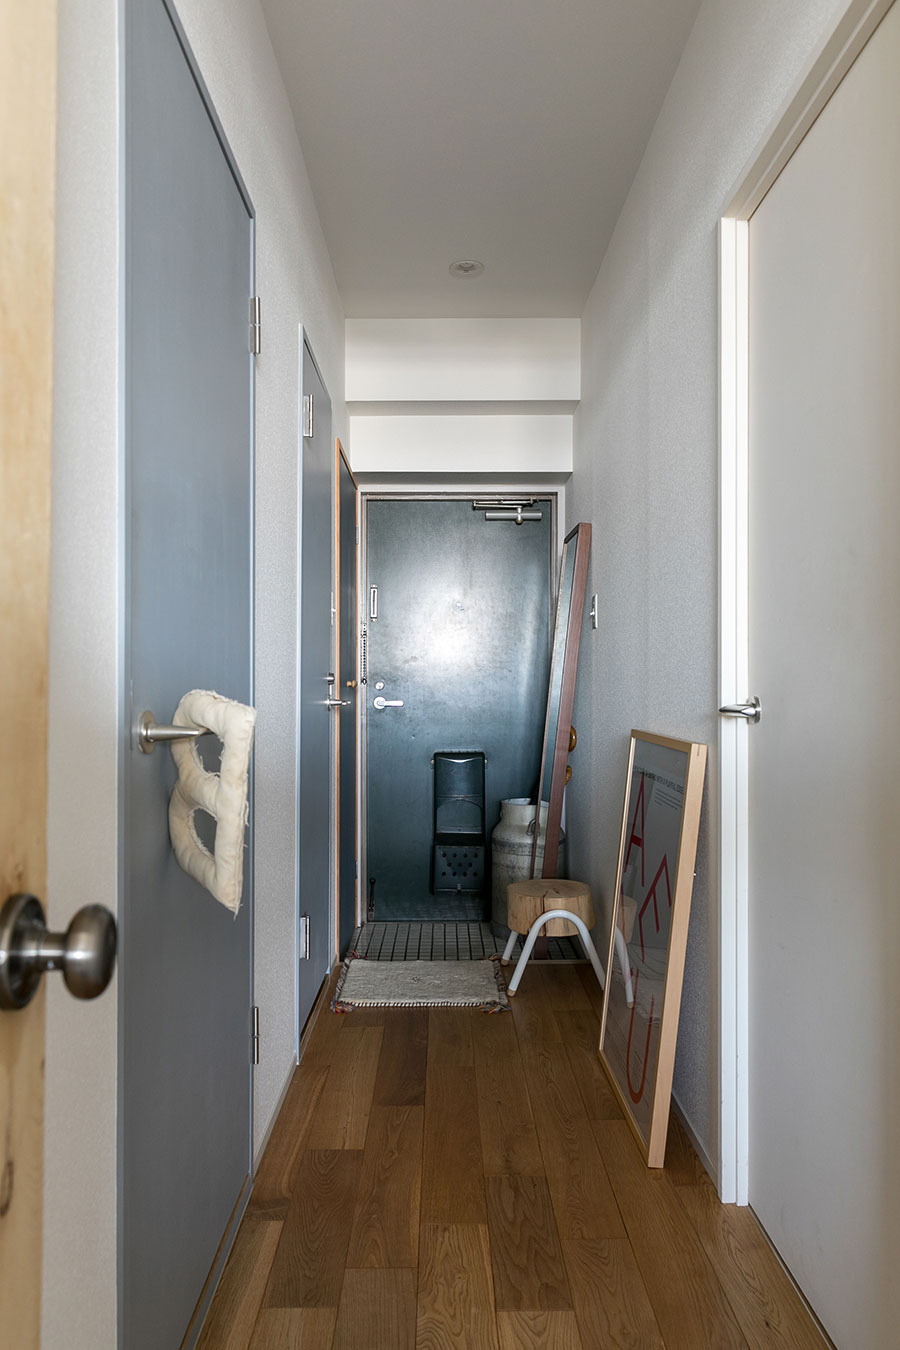 床材は幅広のオークの無垢材。右側に寝室、左側にトイレと洗面所。扉をグレーに。